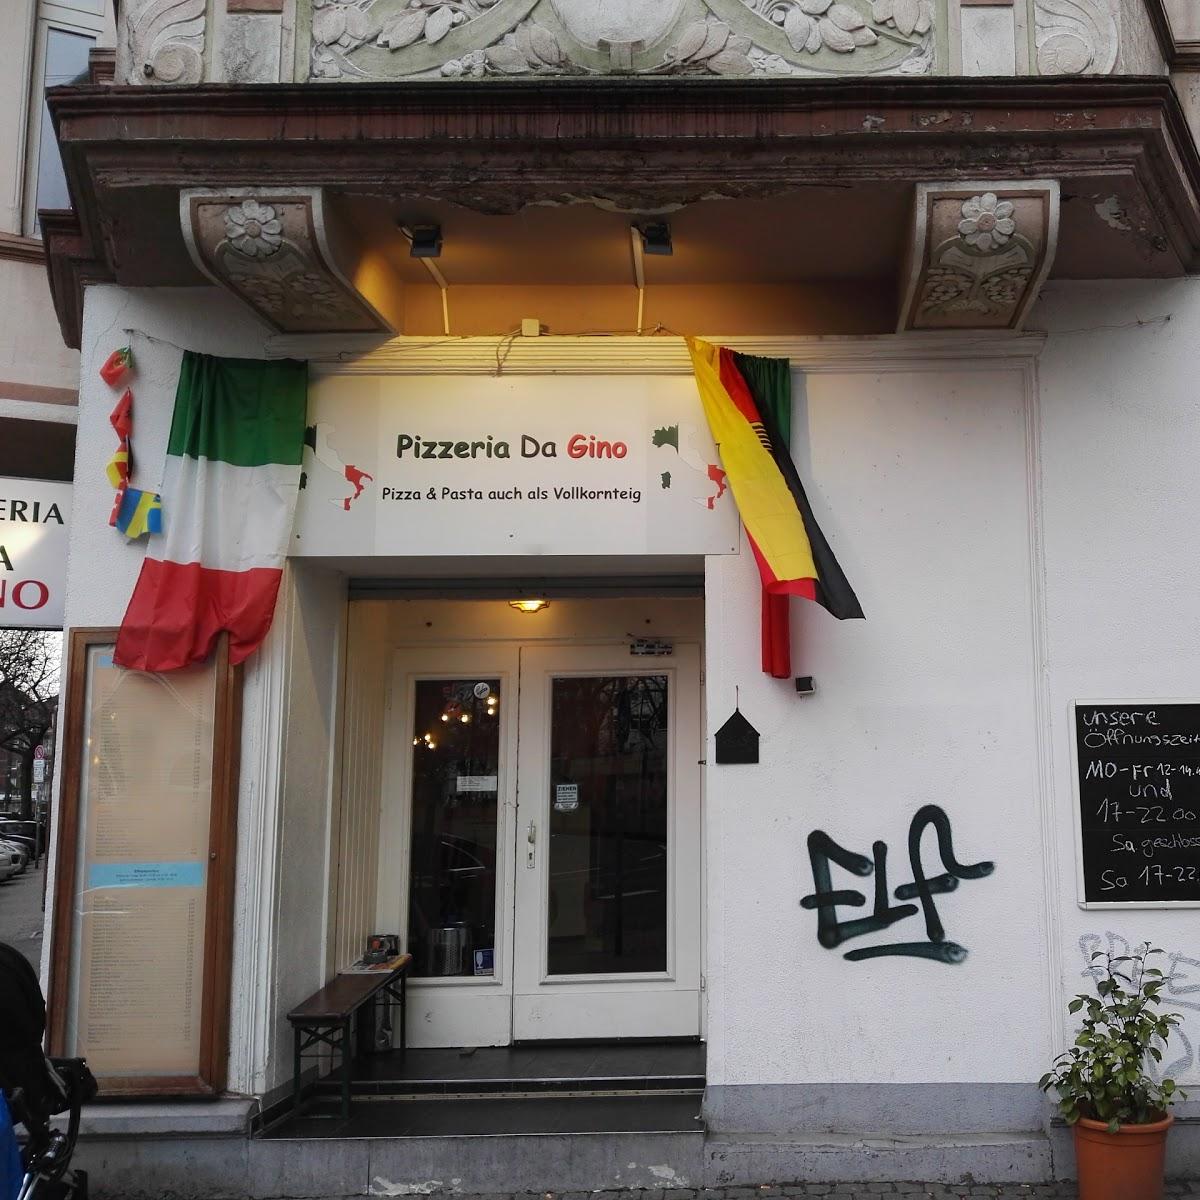 Restaurant "Pizzeria da Gino" in Düsseldorf